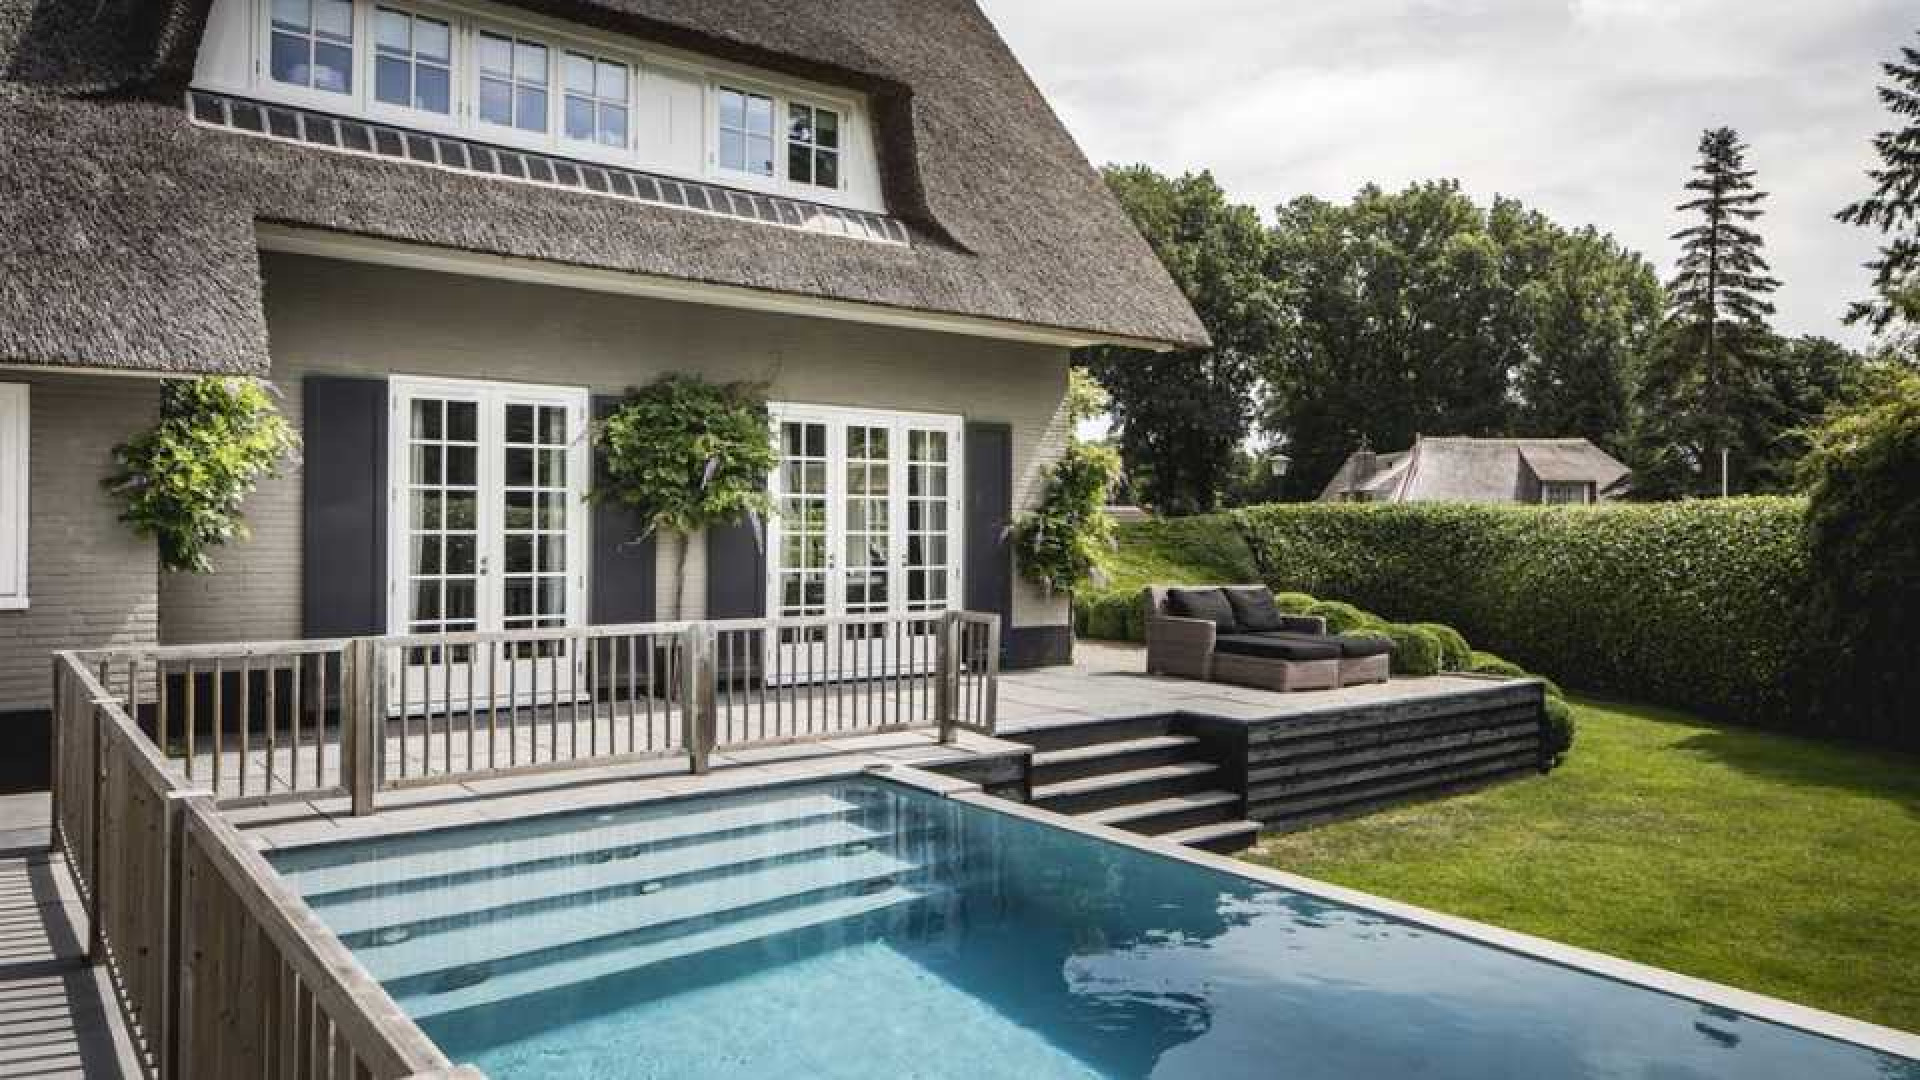 Winston en Renate Gerschtanowitz zetten hun villa met buiten zwembad te koop. Zie foto's 17